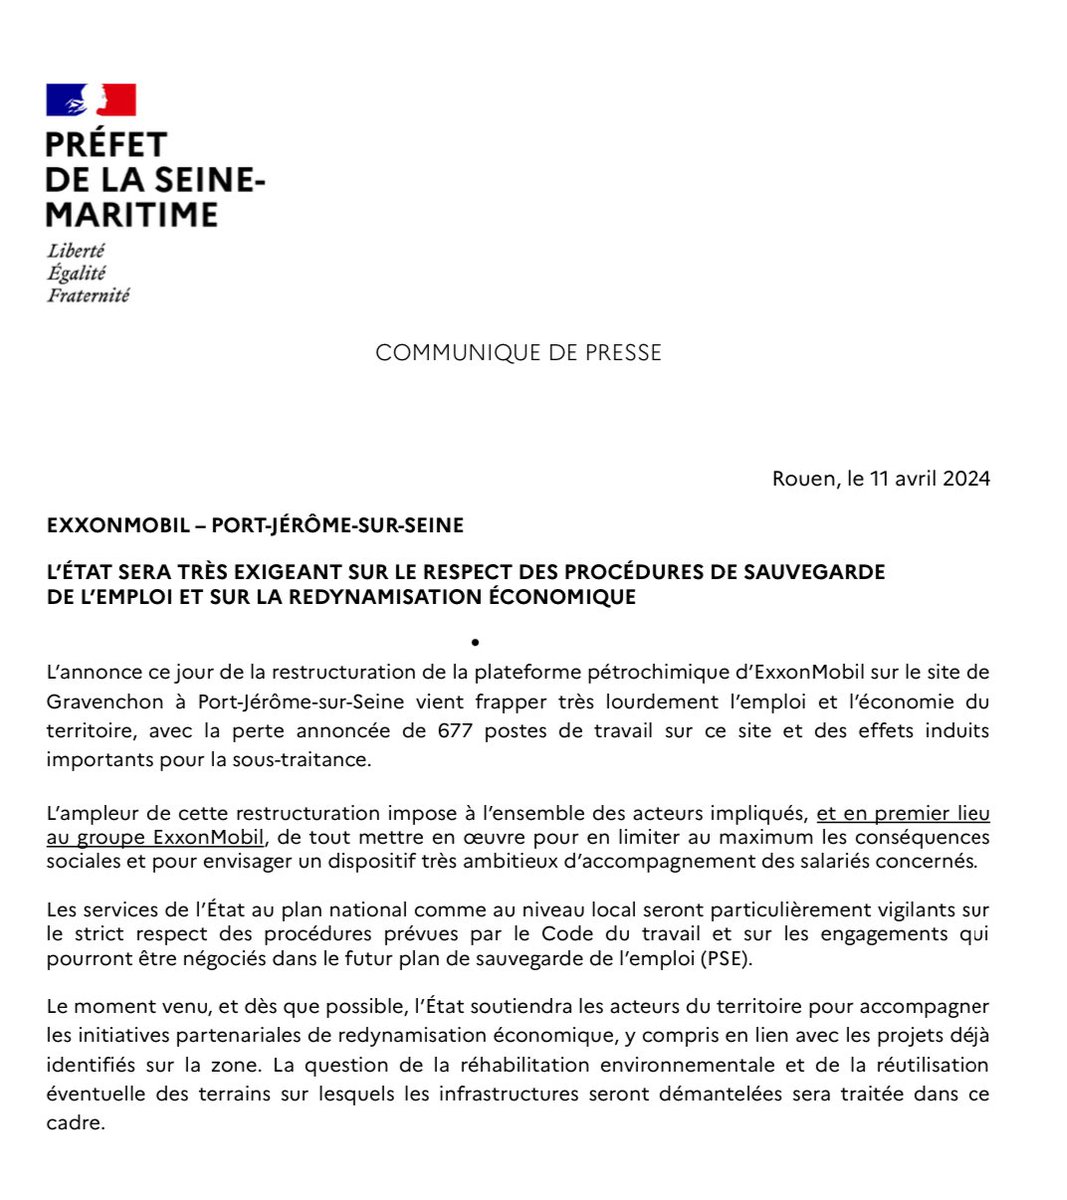 Communiqué relatif aux annonces de l'industriel #ExxonMobil concernant la suppression de postes de travail sur sa plateforme pétrochimique de Port-Jérôme-sur-Seine. L’État sera très exigeant quant au respect des procédures de sauvegarde de l'emploi et à la redynamisation…